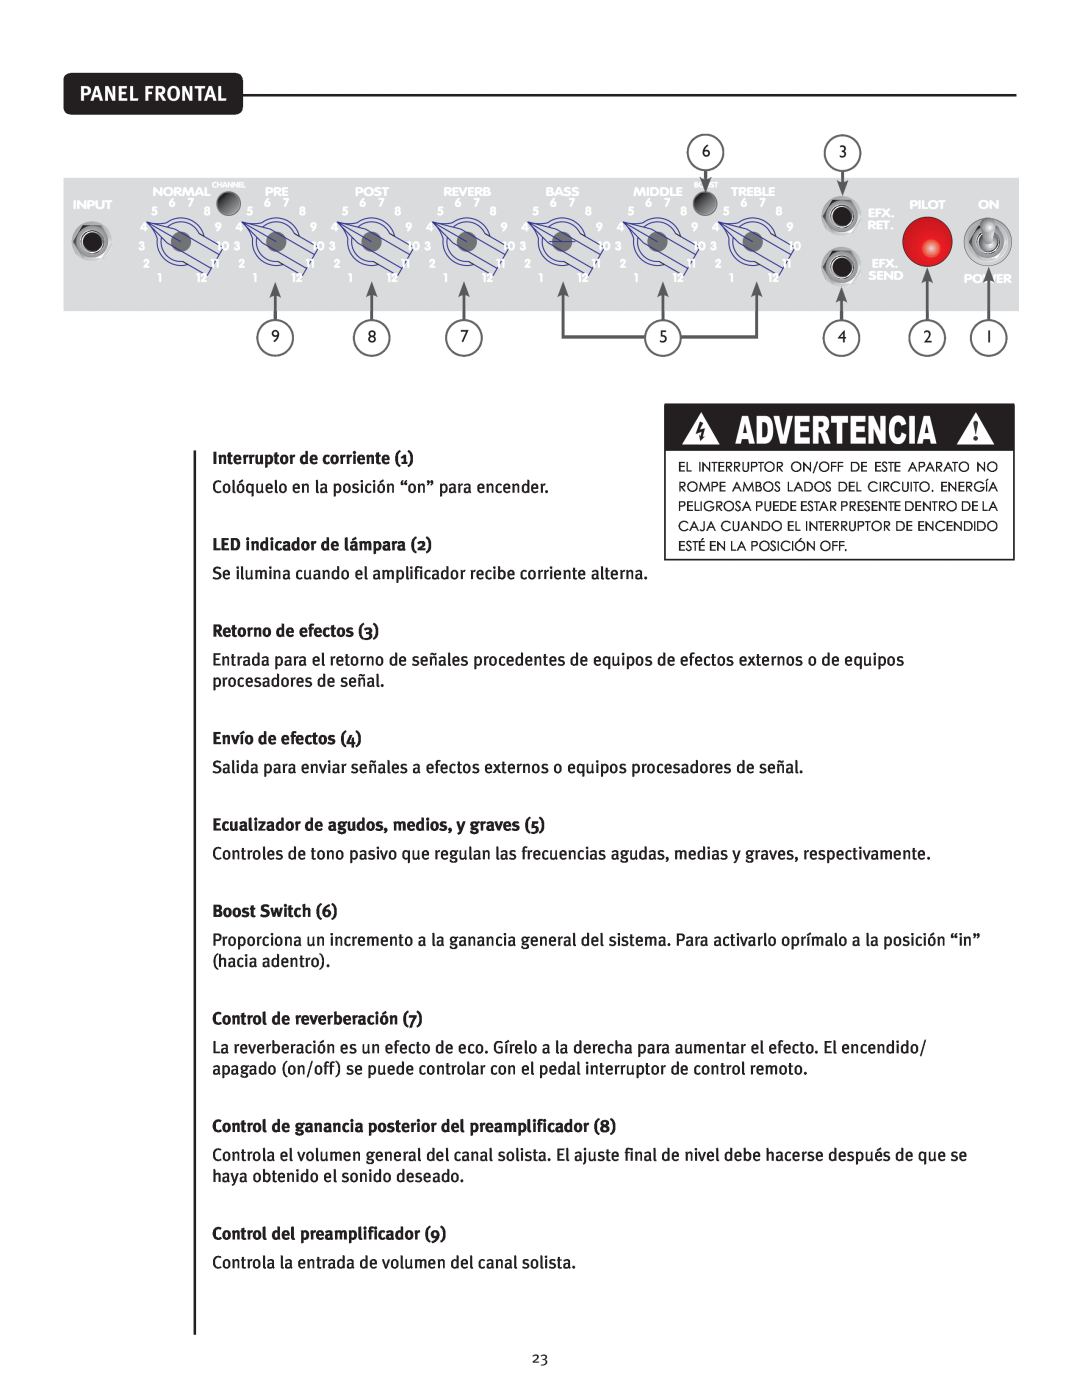 Peavey Classic 30 manual Panel Frontal, Advertencia, Interruptor de corriente, LED indicador de lámpara, Retorno de efectos 